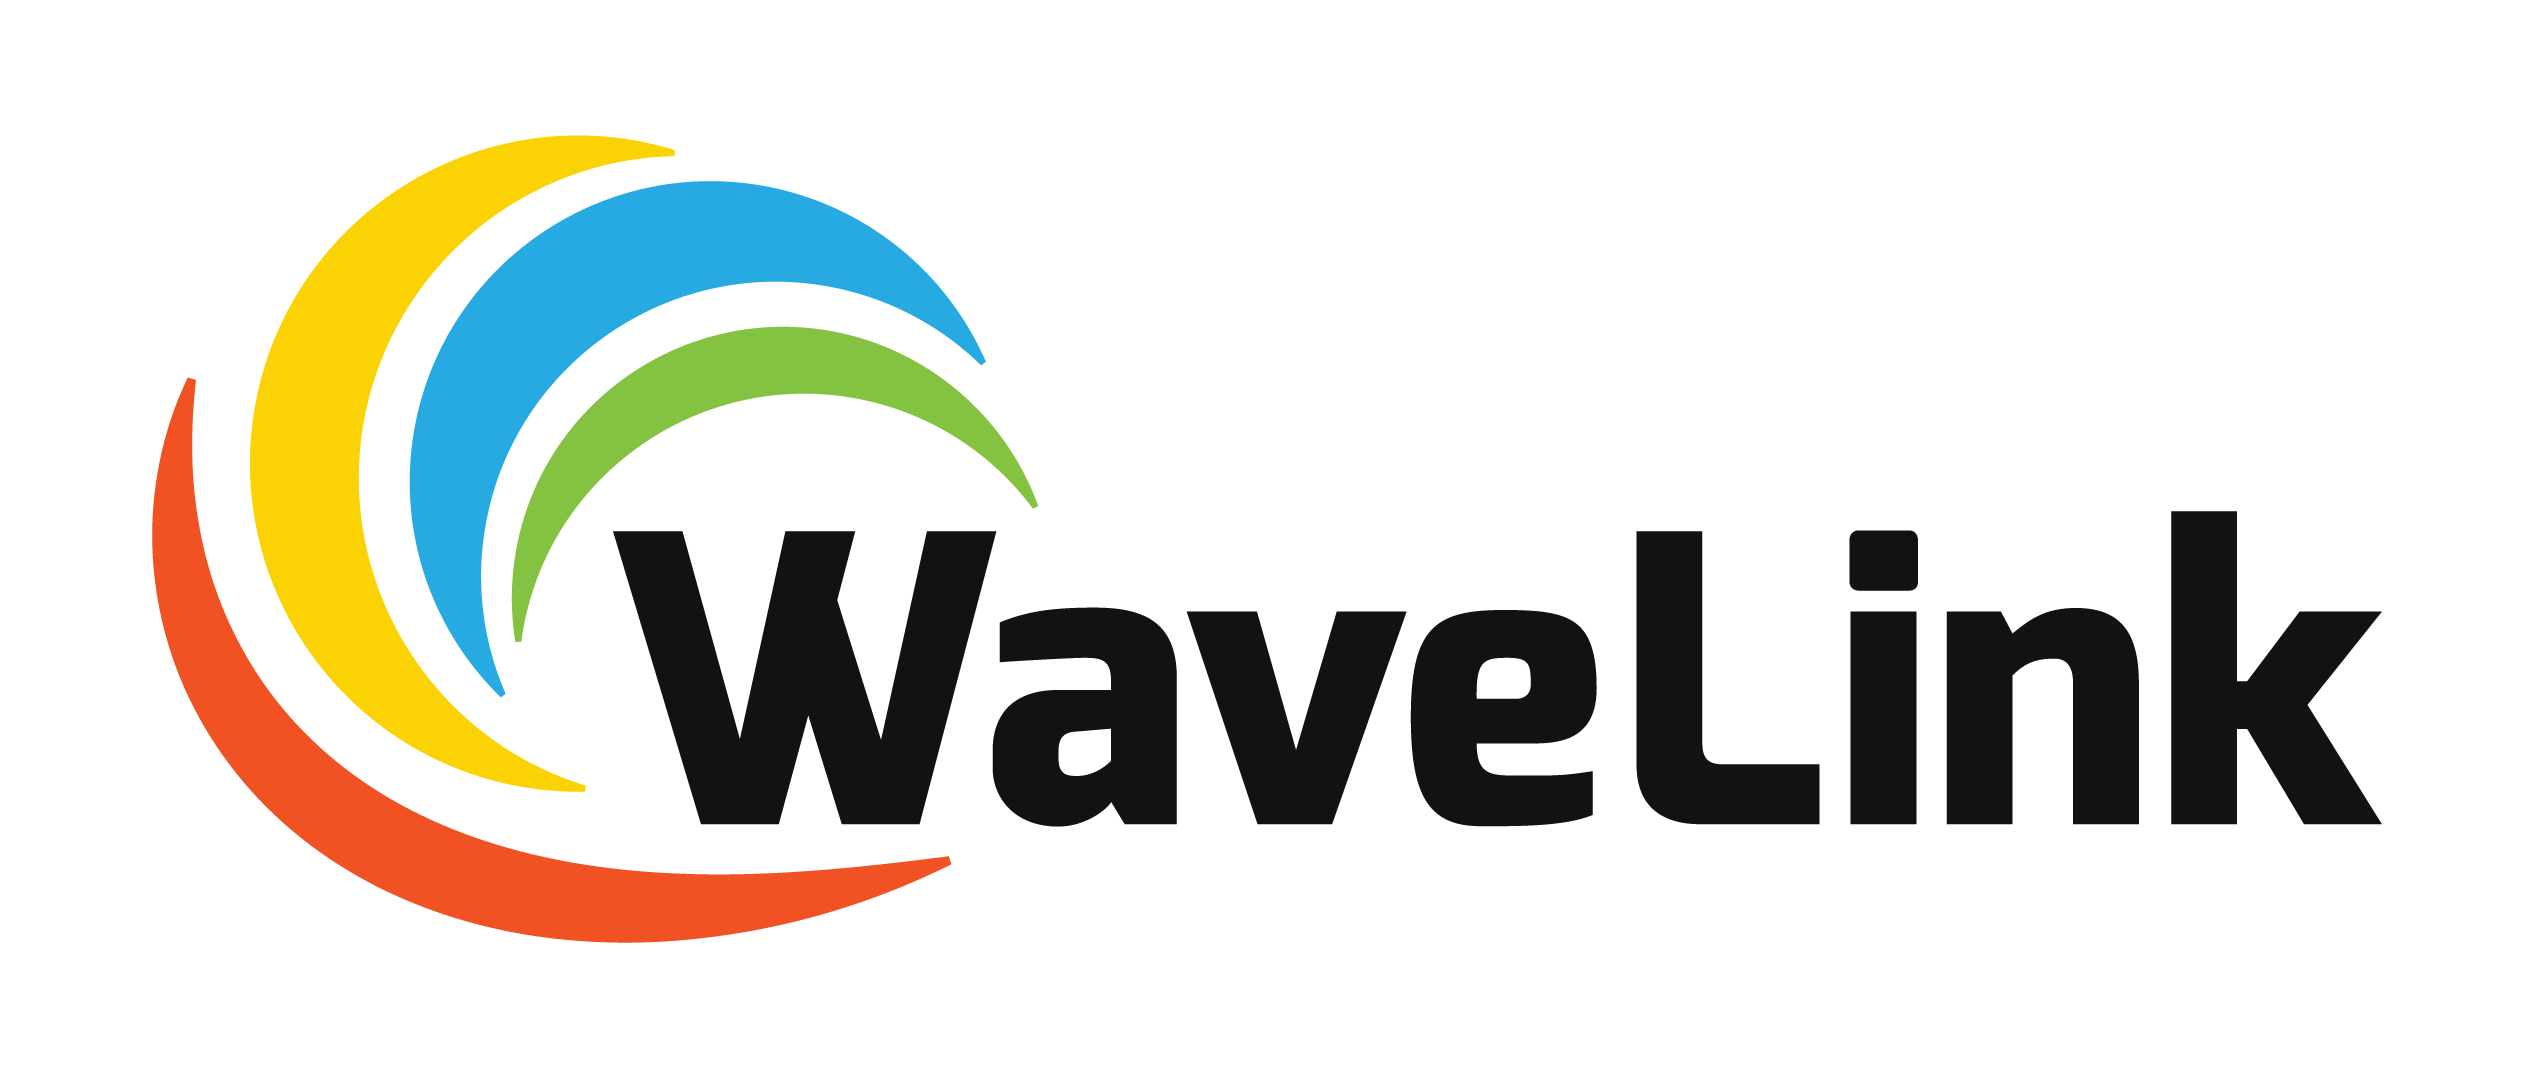 Wave Link, LLC